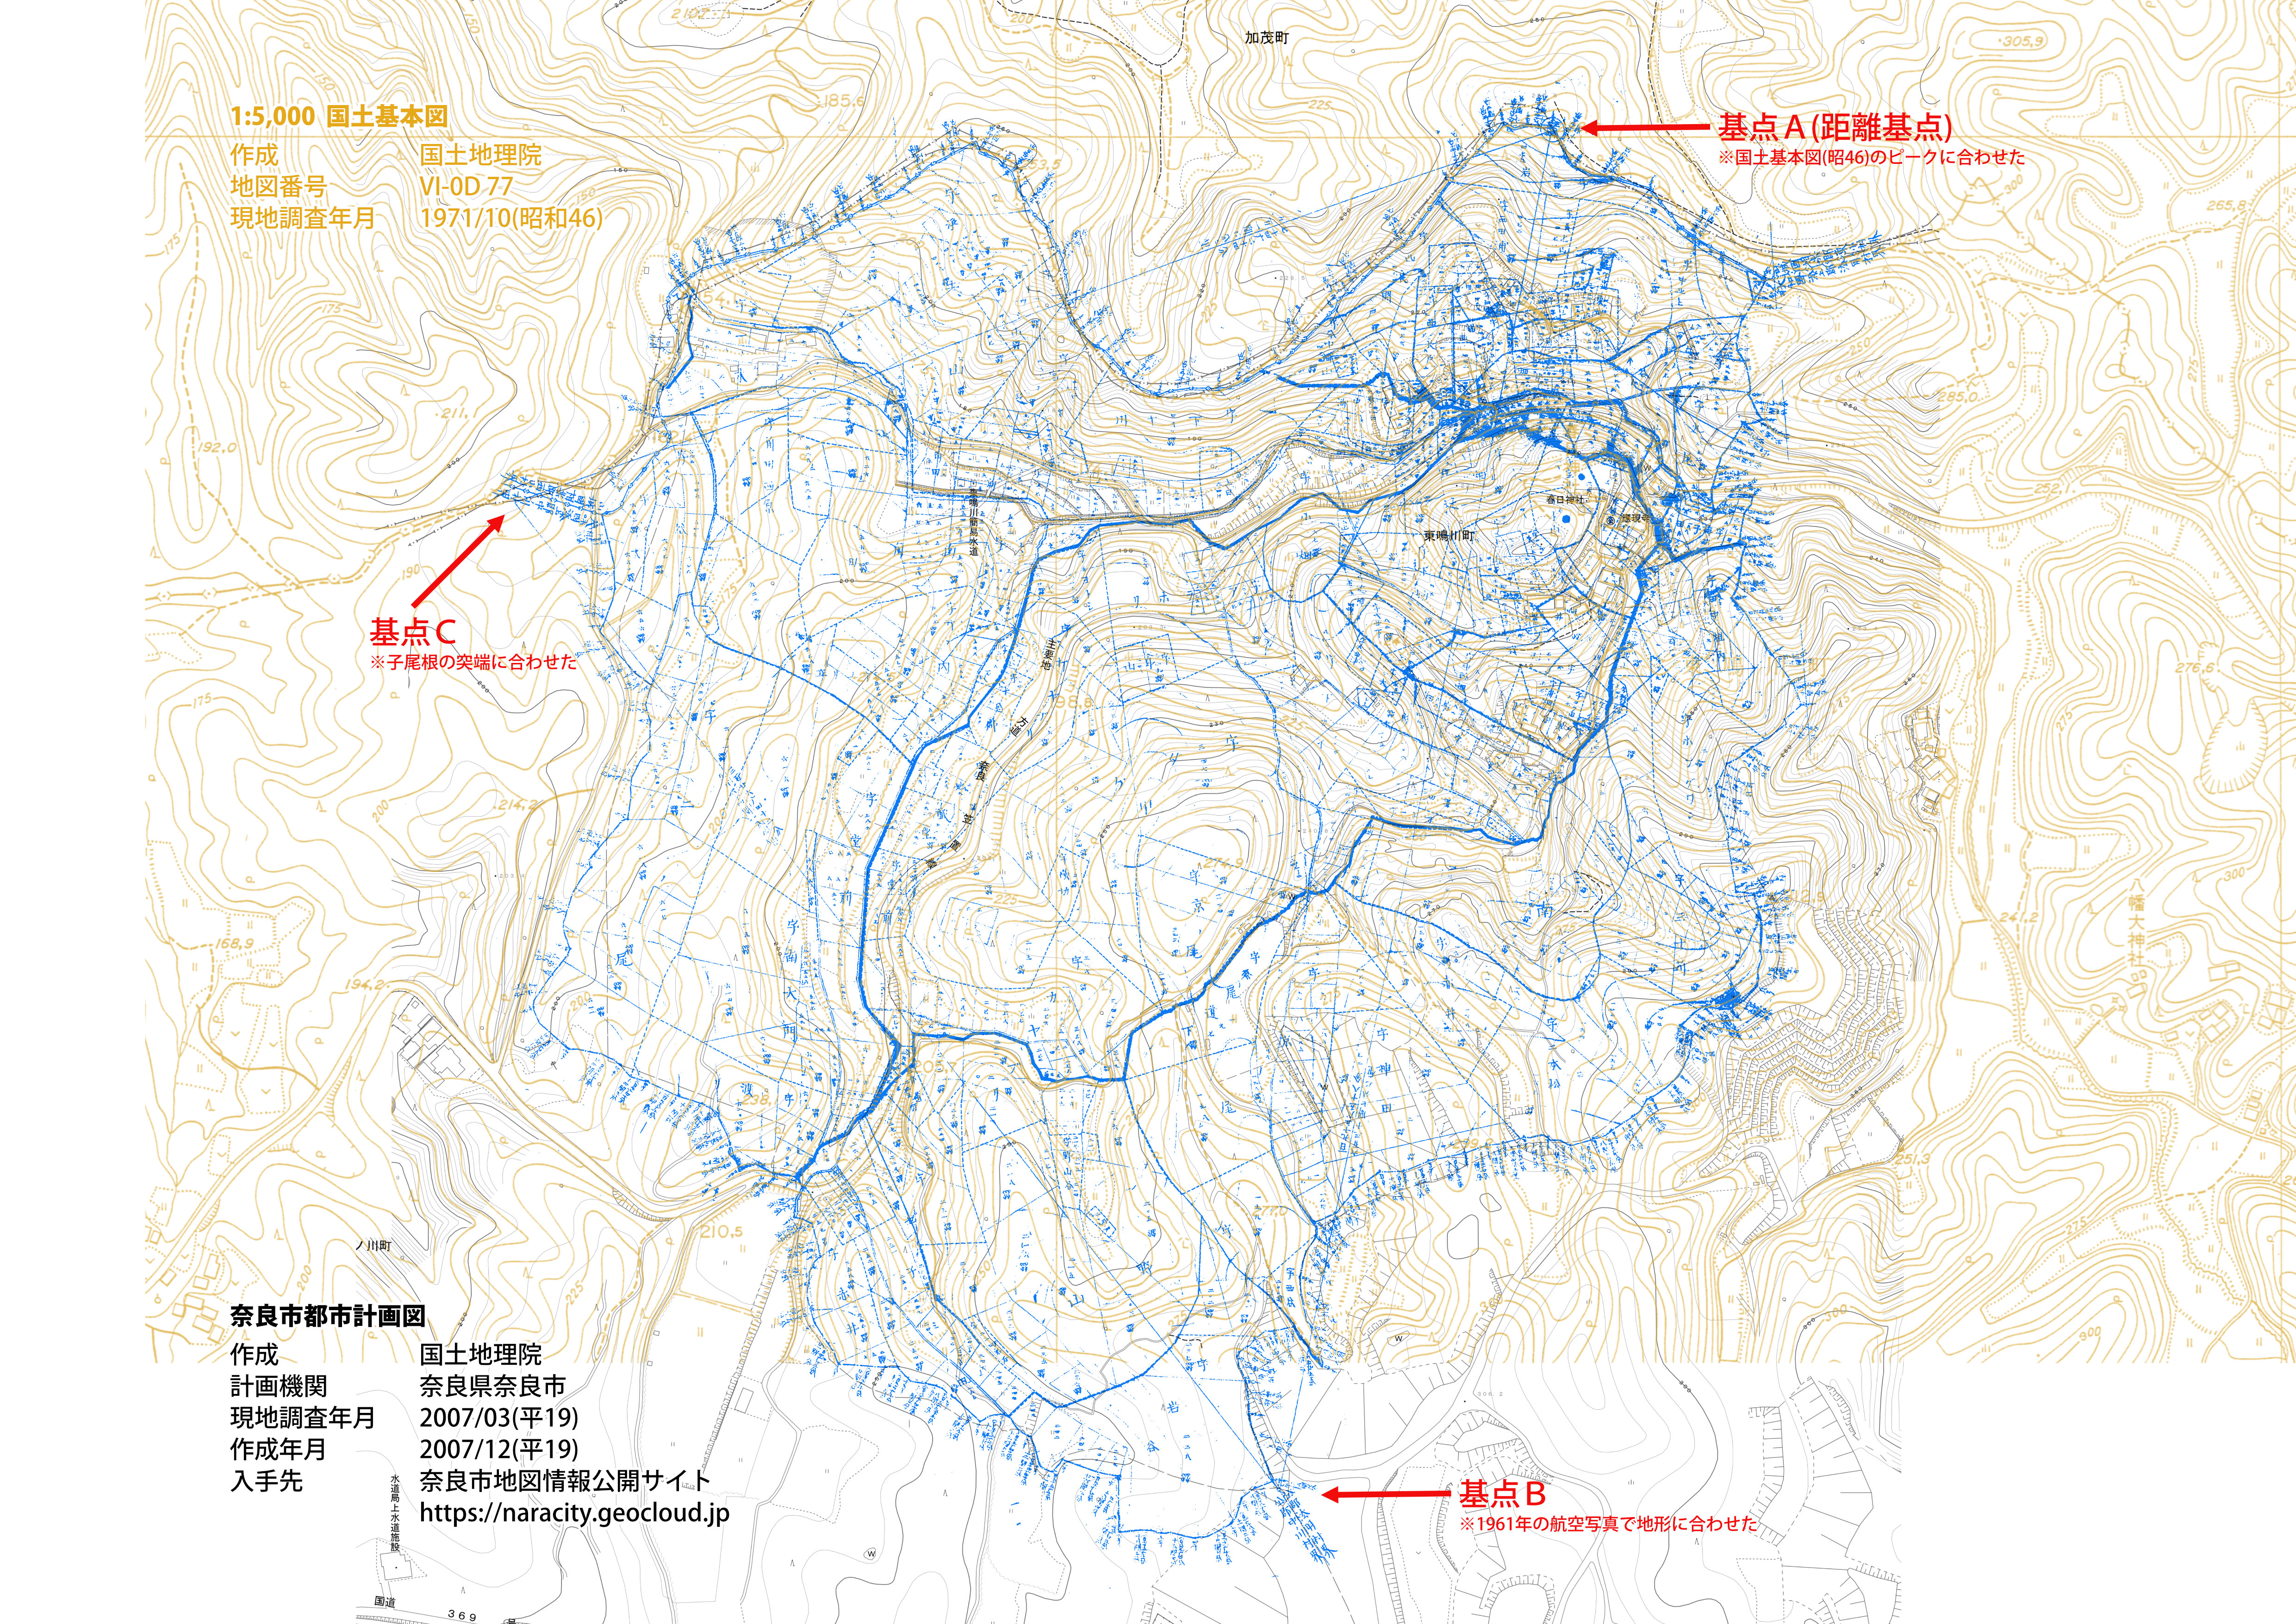 鳴川村実測全図と国土基本図・奈良市都市計画図の合成